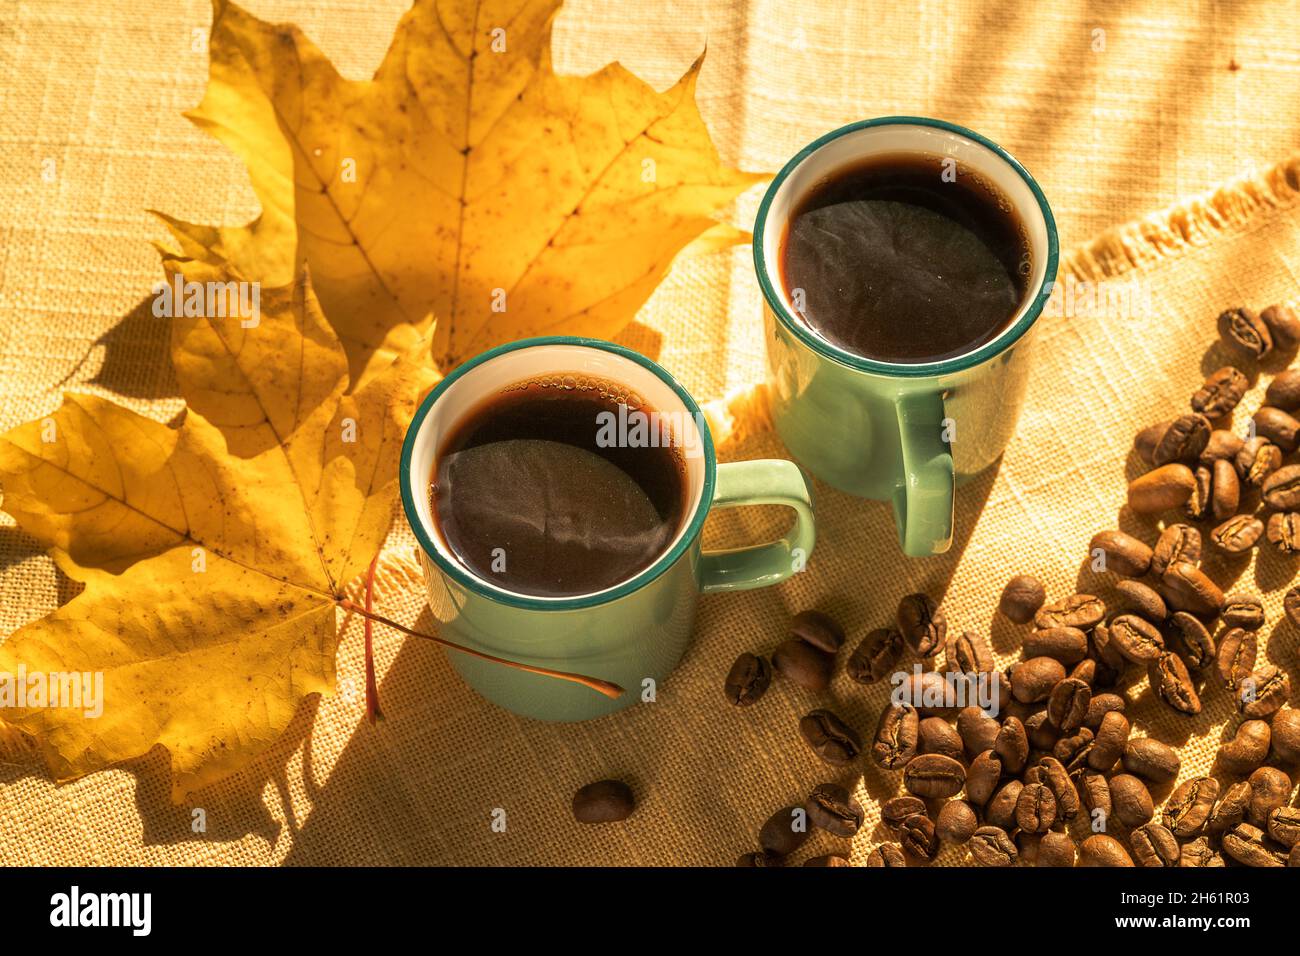 Tassen Kaffee und Kaffeebohnen, und gelbe Blätter durch Sonnenlicht beleuchtet , Herbsttag. Stockfoto